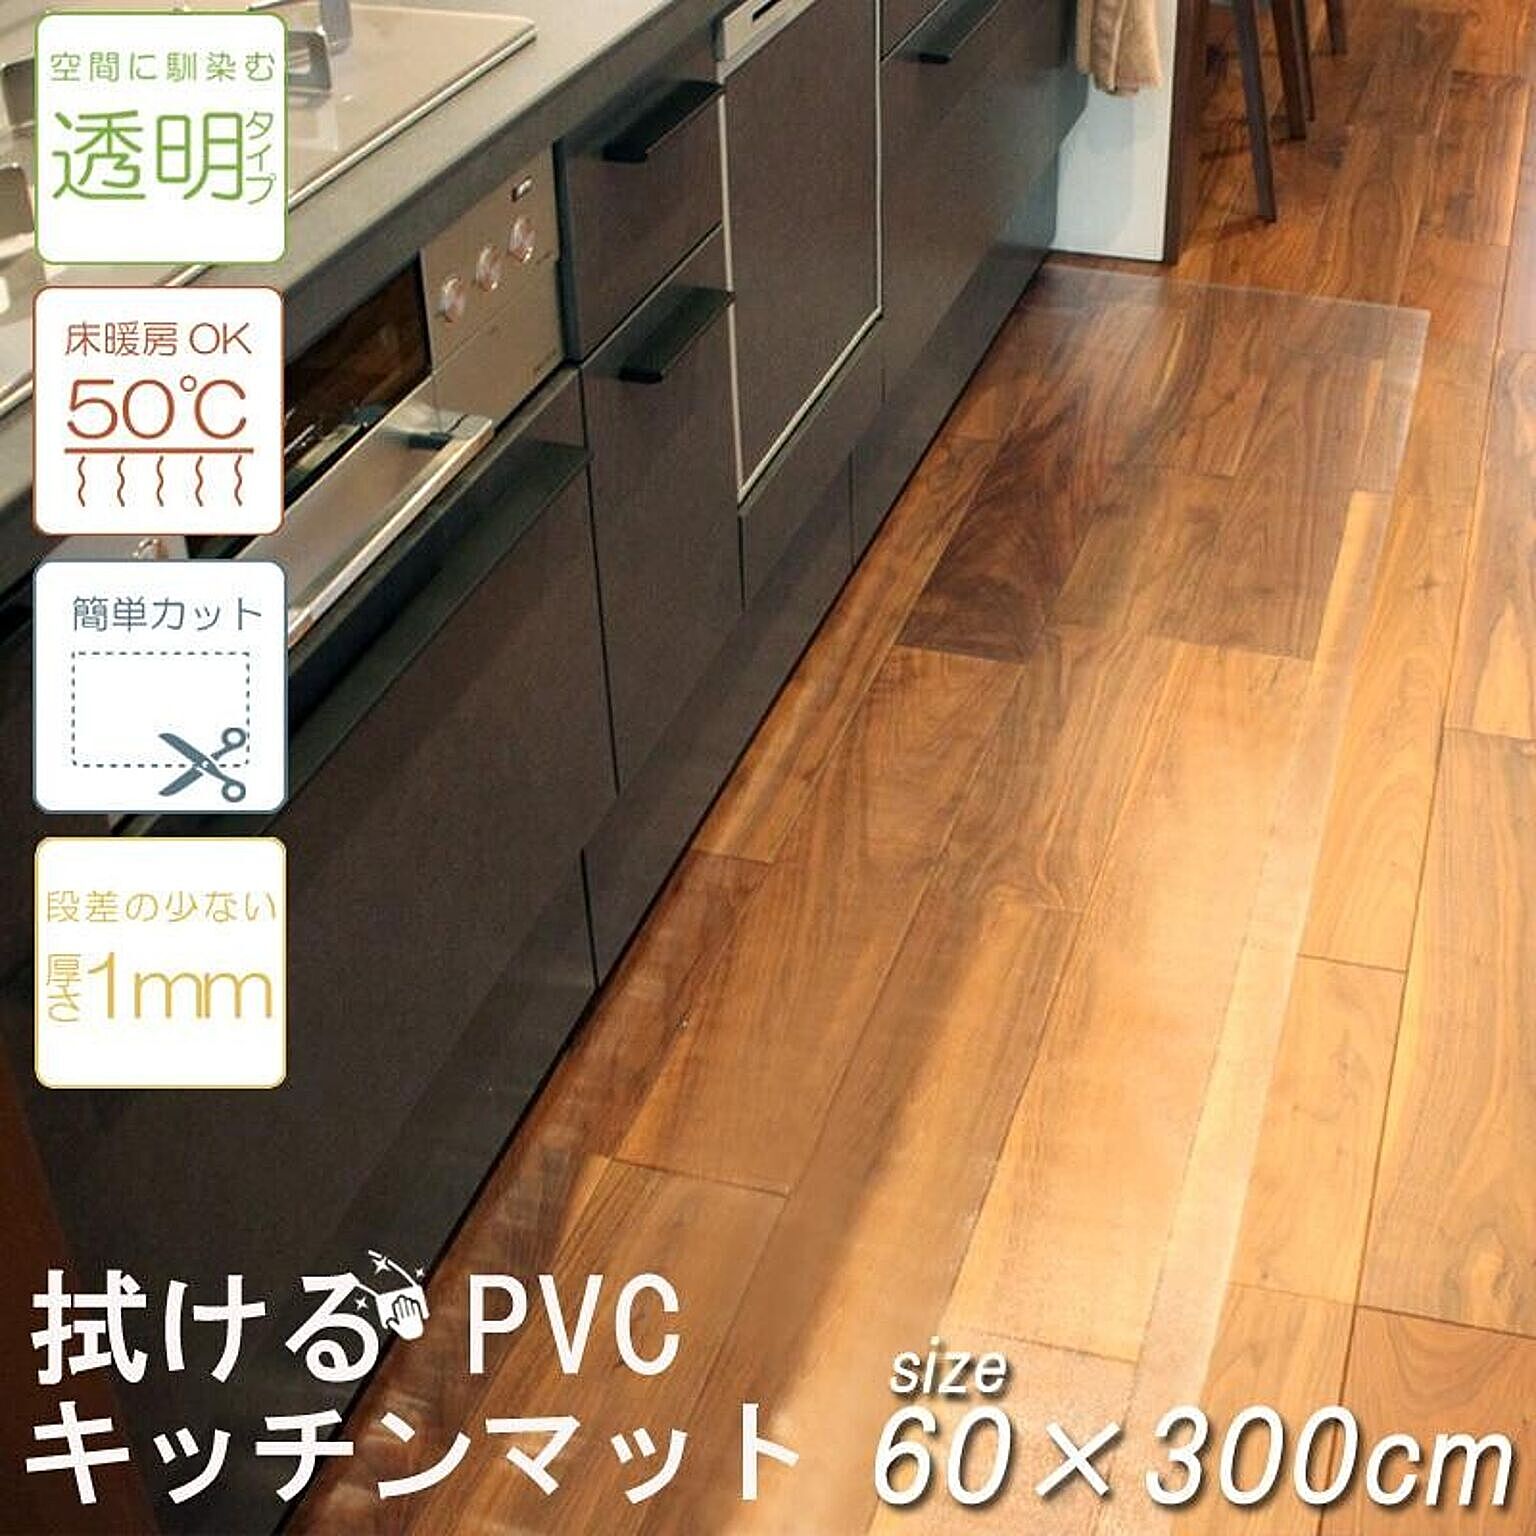 キッチンマット PVC 透明 汚れ防止 大判 床暖房対応 カット可能 60×300